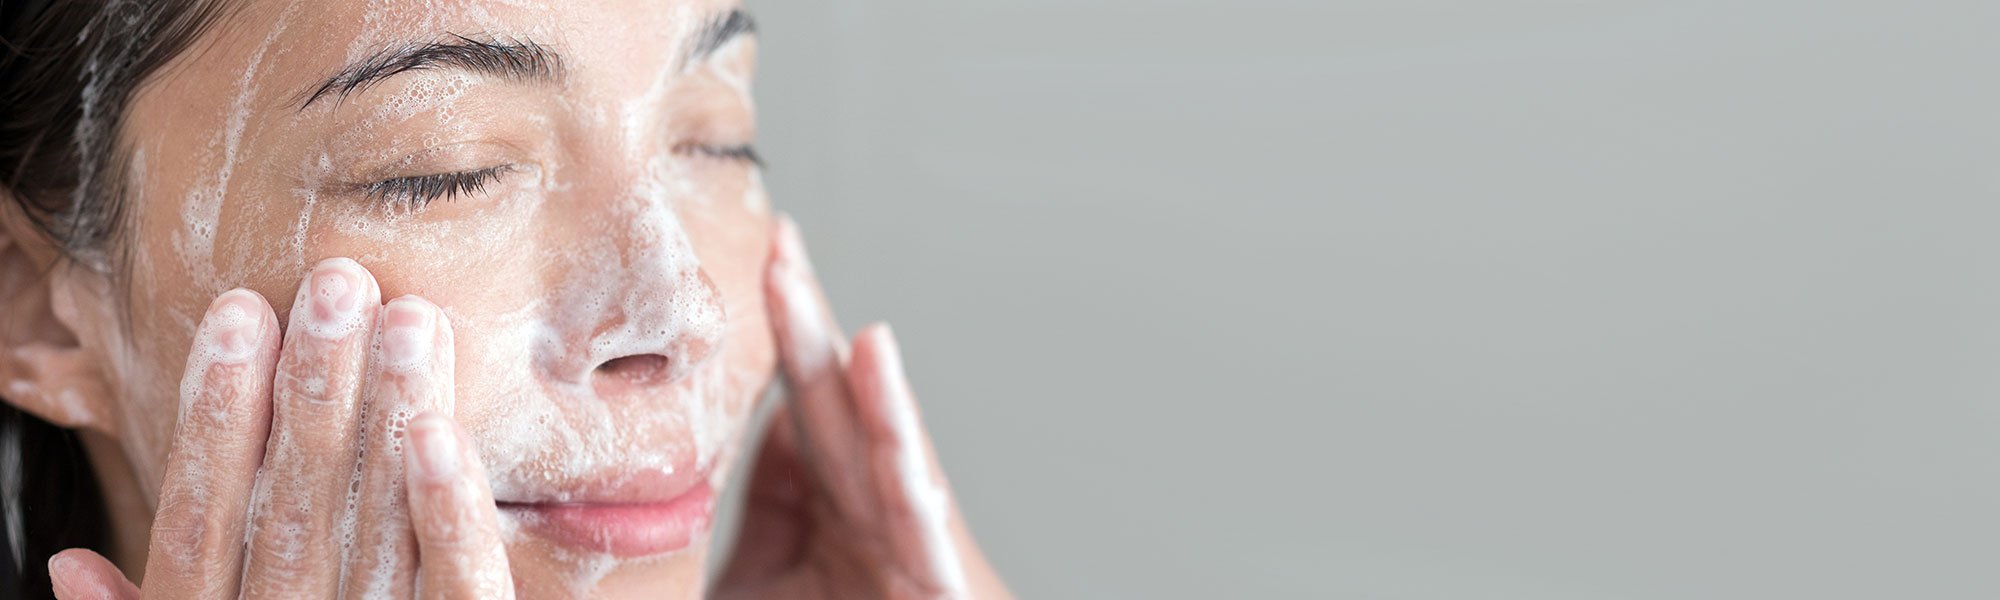 Descubre cómo limpiarte la cara a la perfección gracias a los productos específicos destinados a la limpieza facial de L’Oréal Paris.